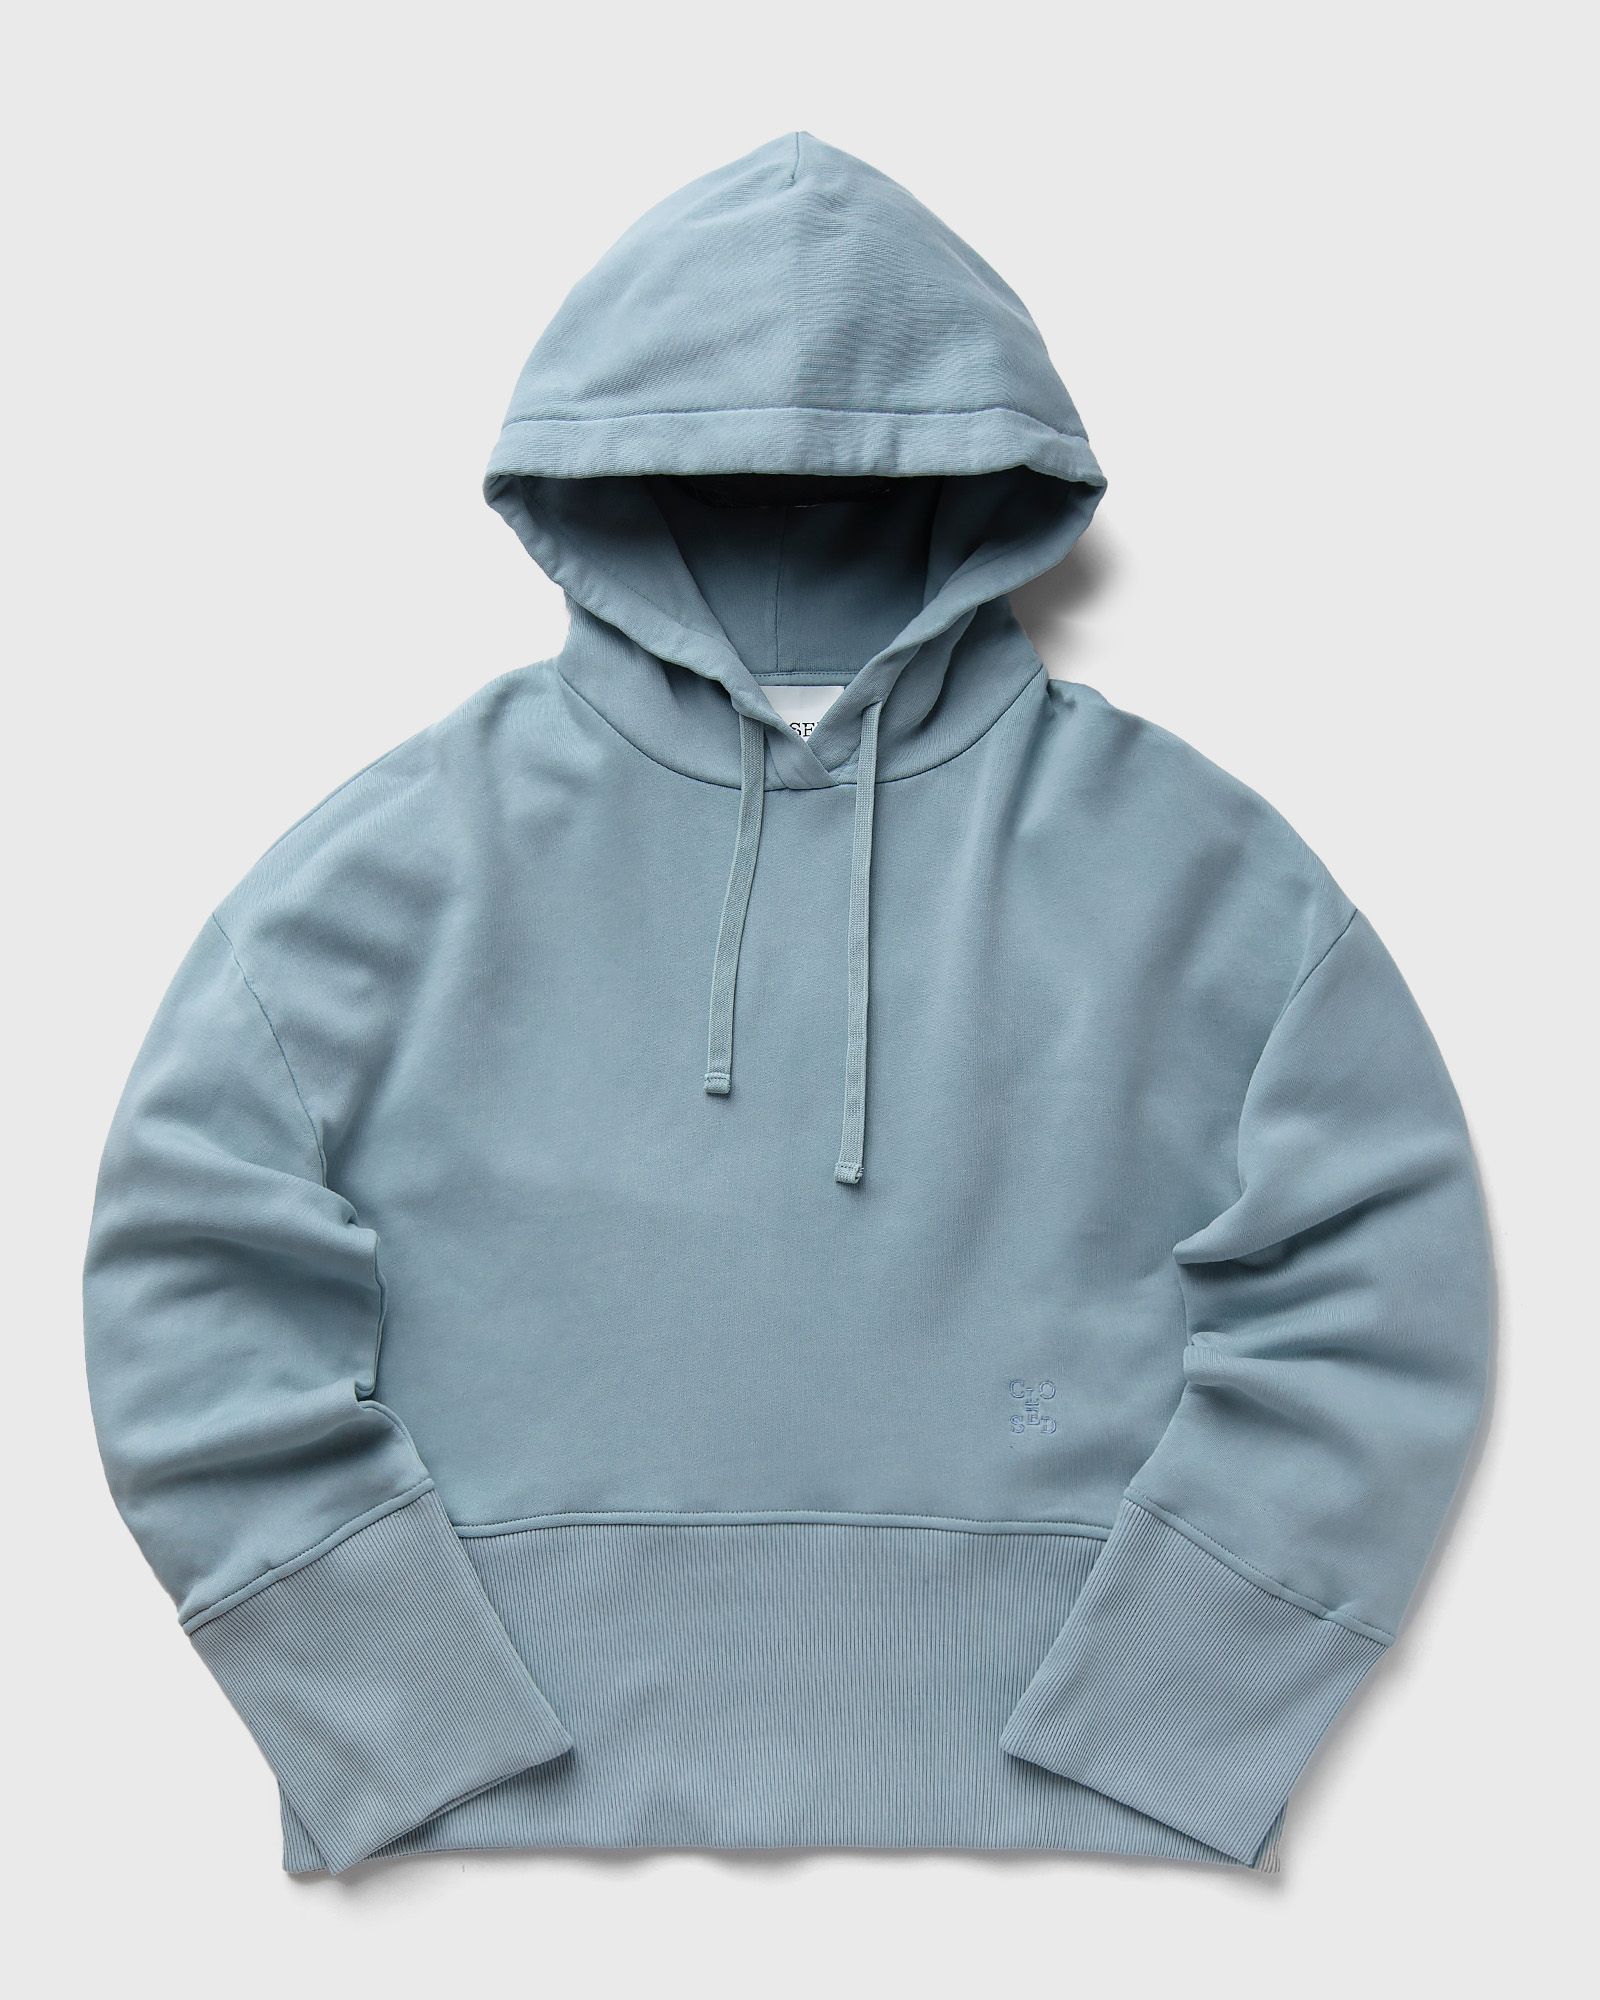 CLOSED - high rib hoodie women hoodies blue in größe:m